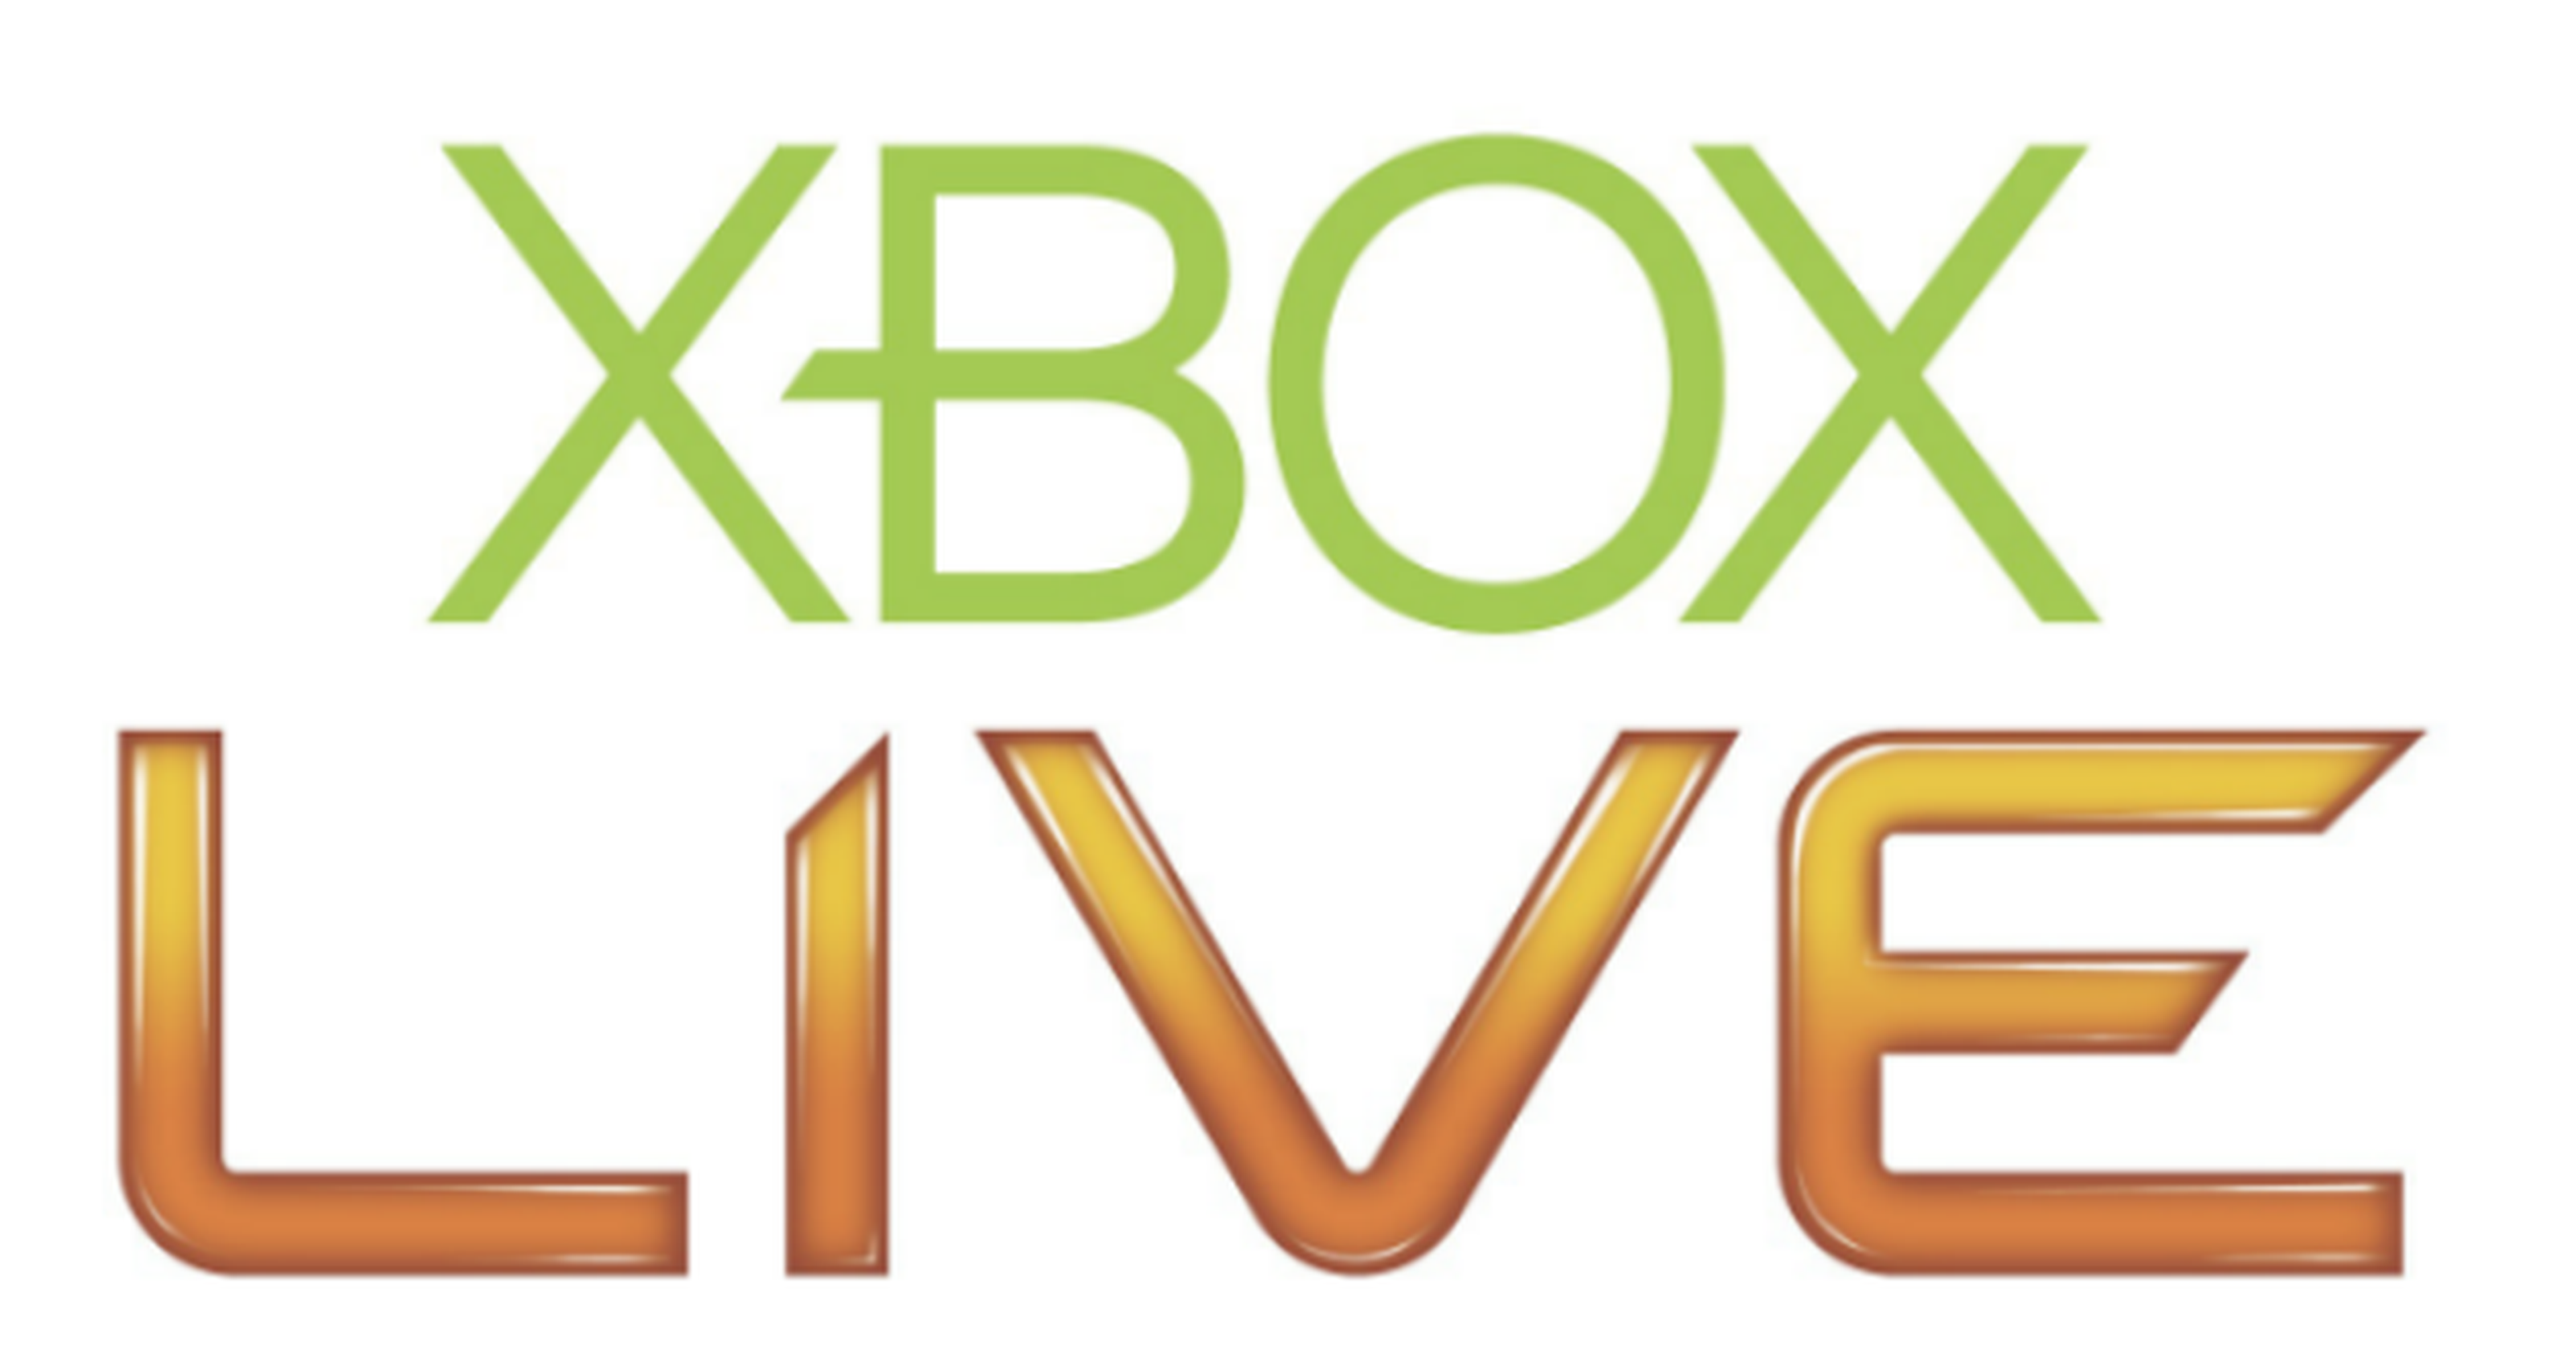 Una semana gratis de Gold a los que tuvieron problemas con Xbox Live